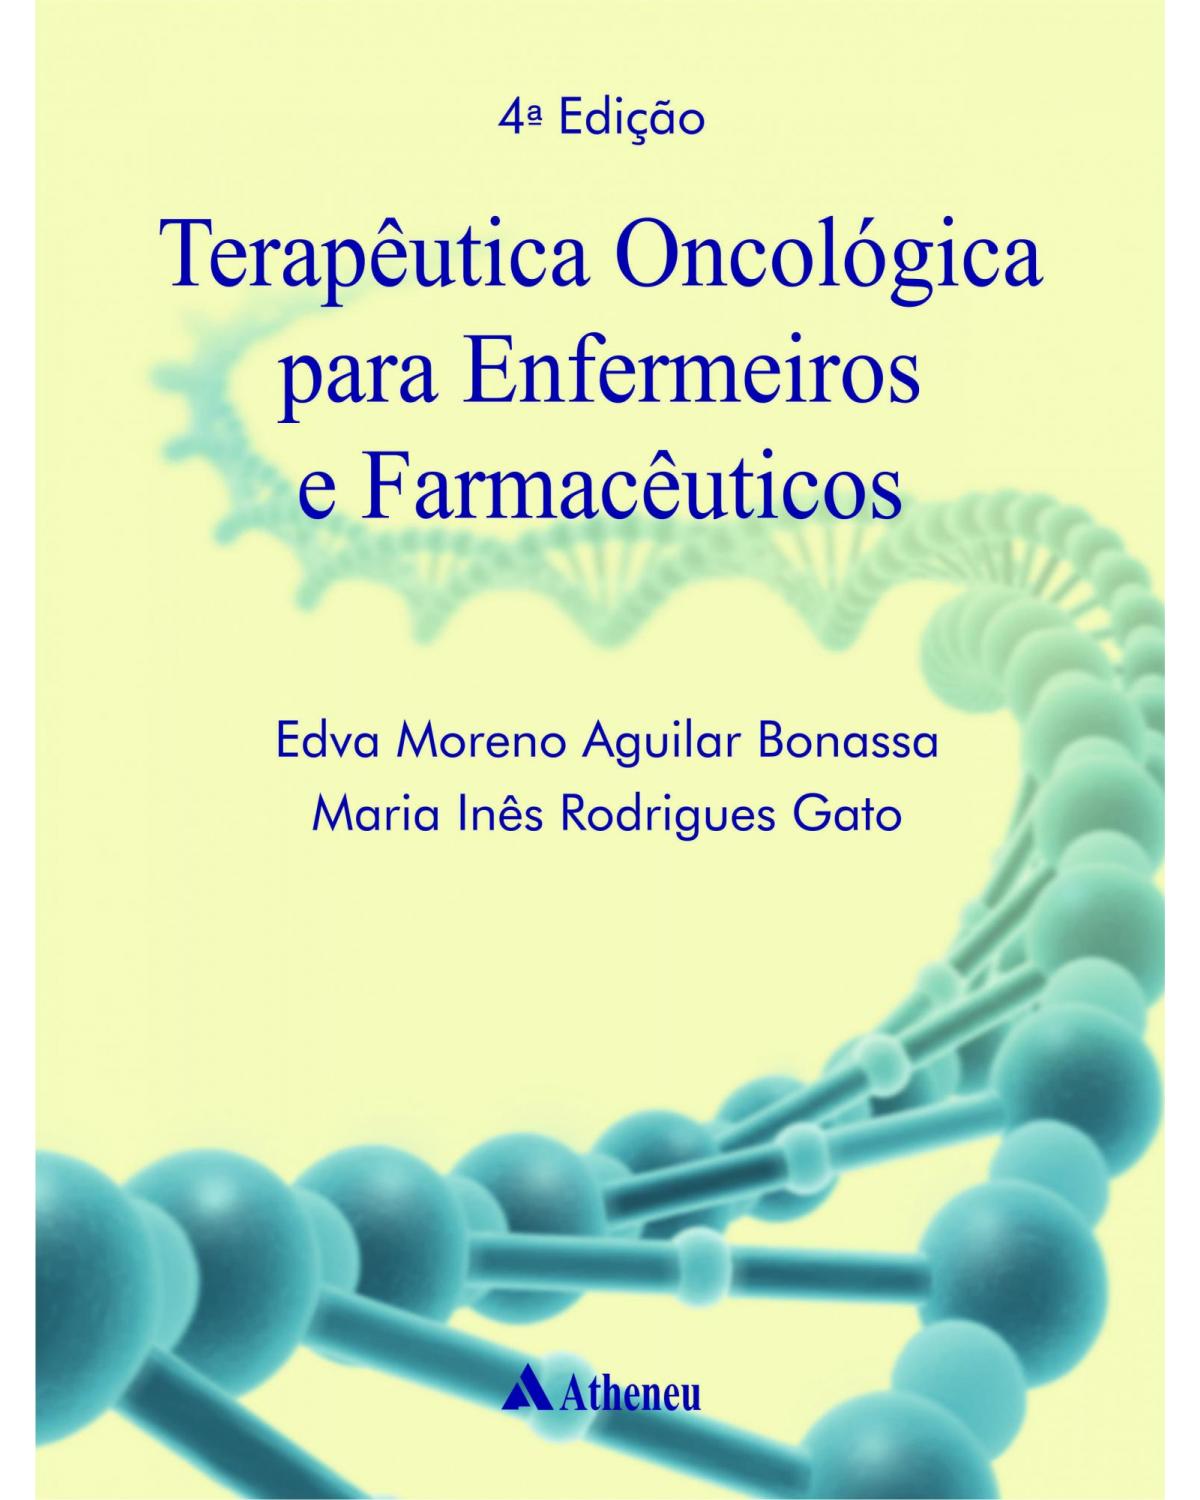 Terapêutica oncológica para enfermeiros e farmacêuticos - 4ª Edição | 2012